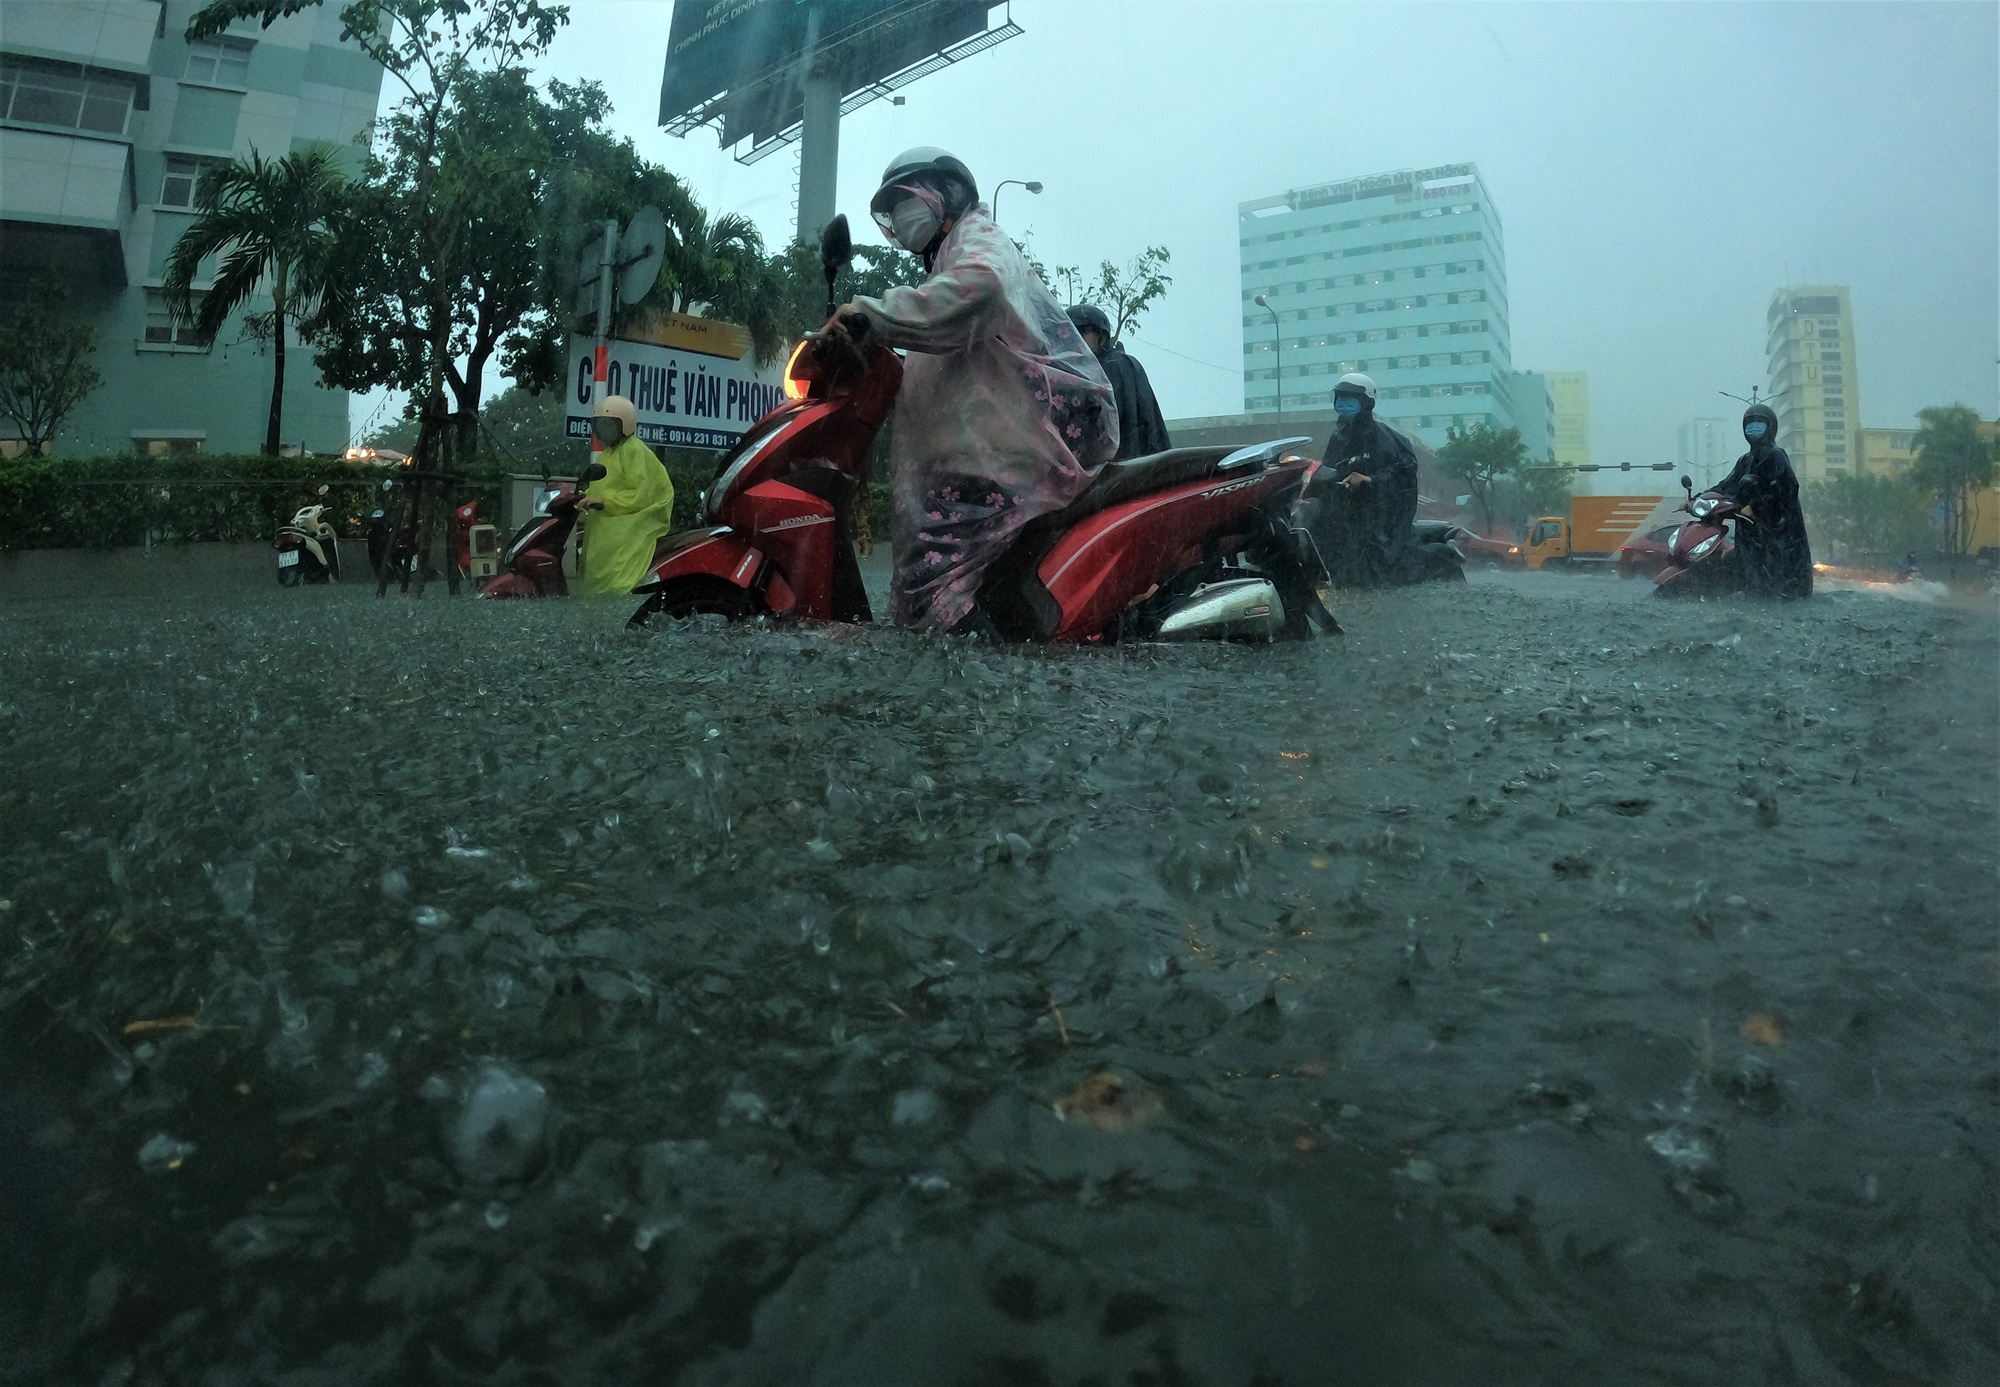 Clip, ảnh: Đường phố Đà Nẵng thành sông sau mưa, người dân dắt xe bì bõm về nhà - Ảnh 2.